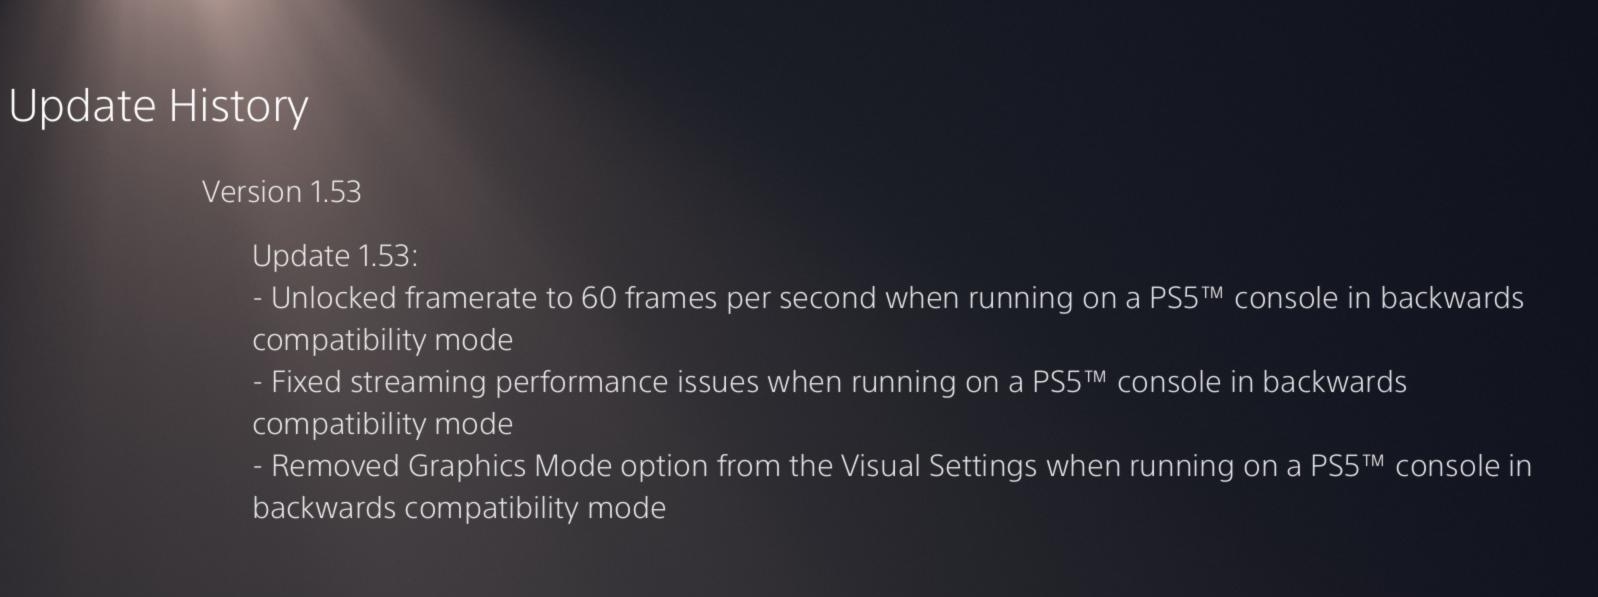 Horizon Zero Dawn ganha patch para rodar em 60 fps no PS5 | Voxel